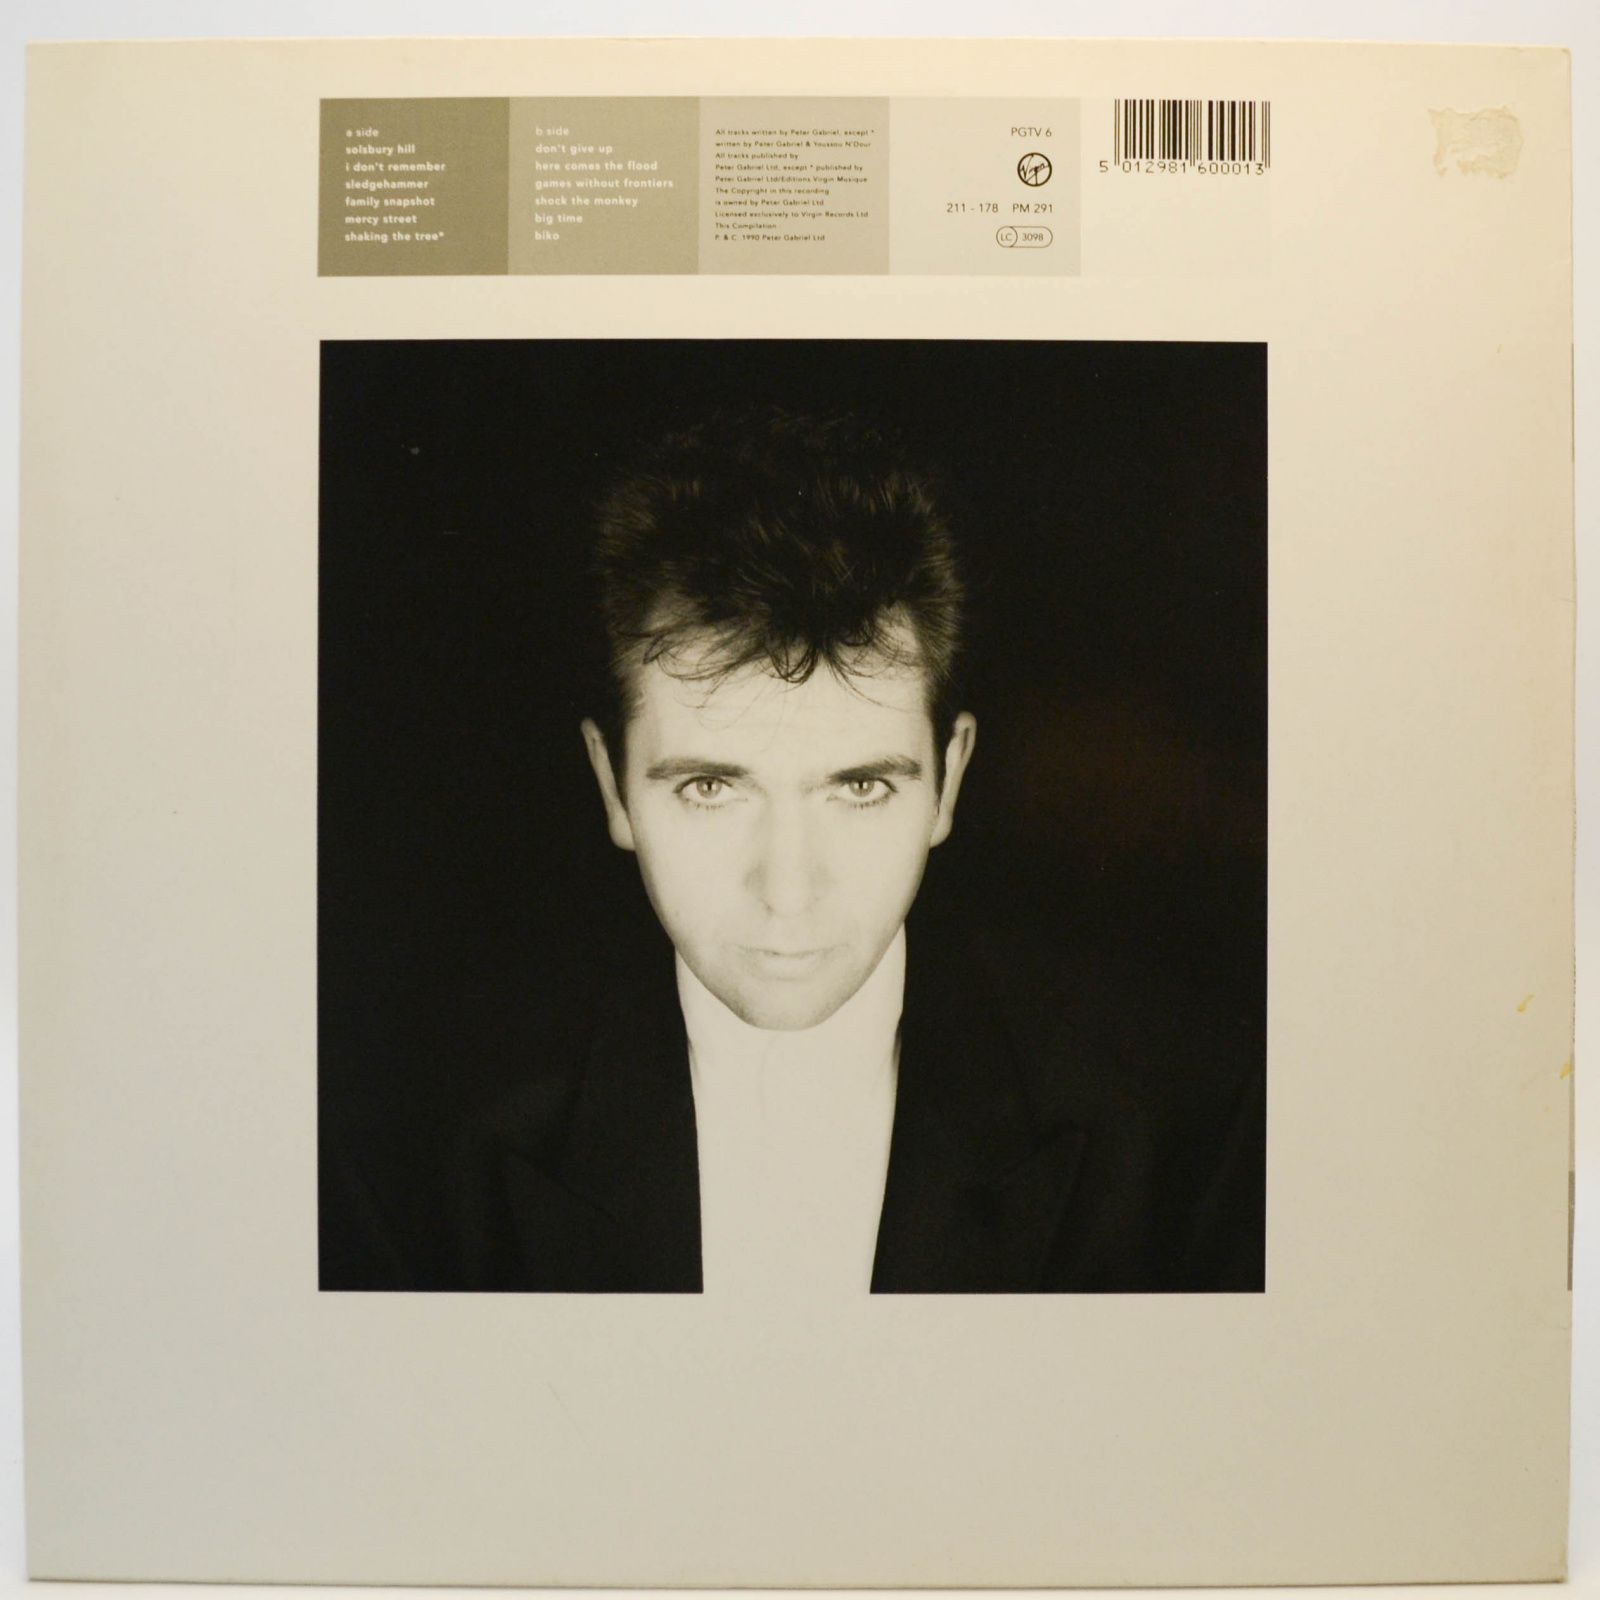 Peter Gabriel — Shaking The Tree: Twelve Golden Greats, 1990